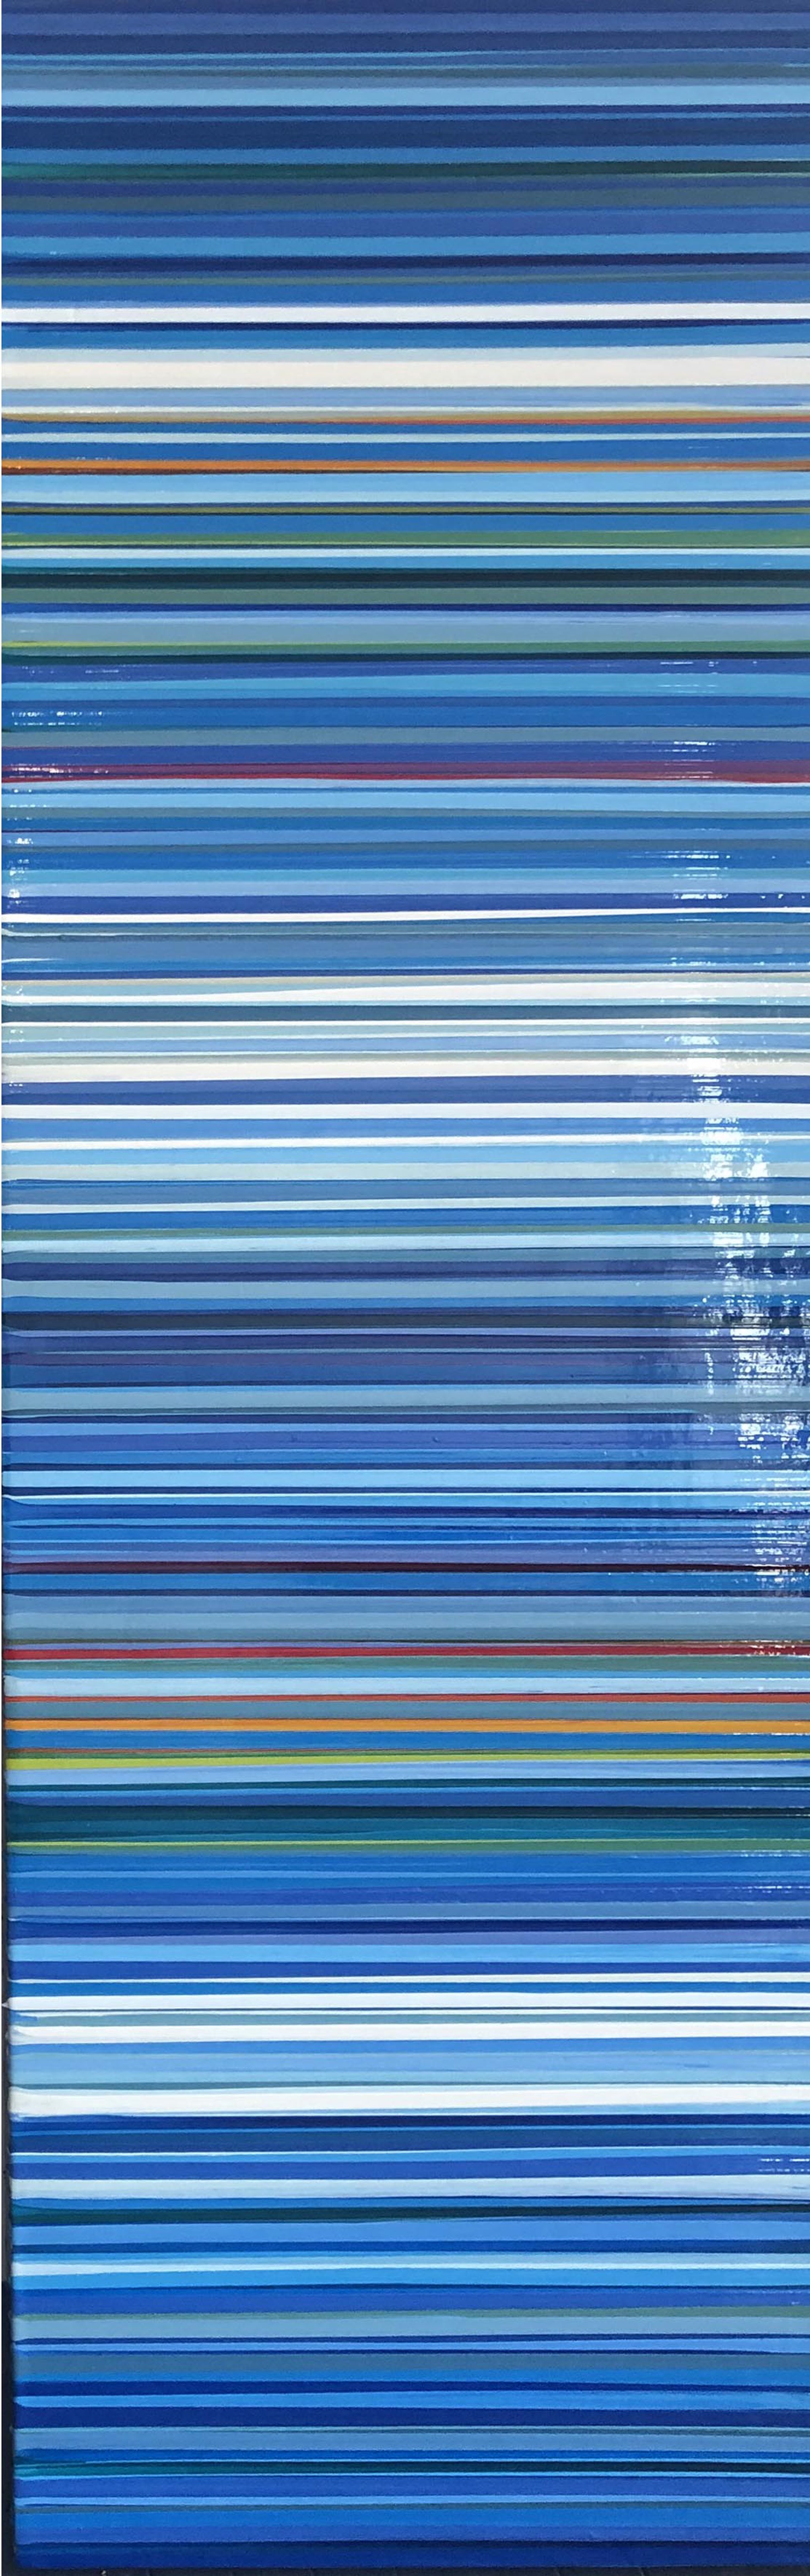 Blue Stripe by Michael Hoffman